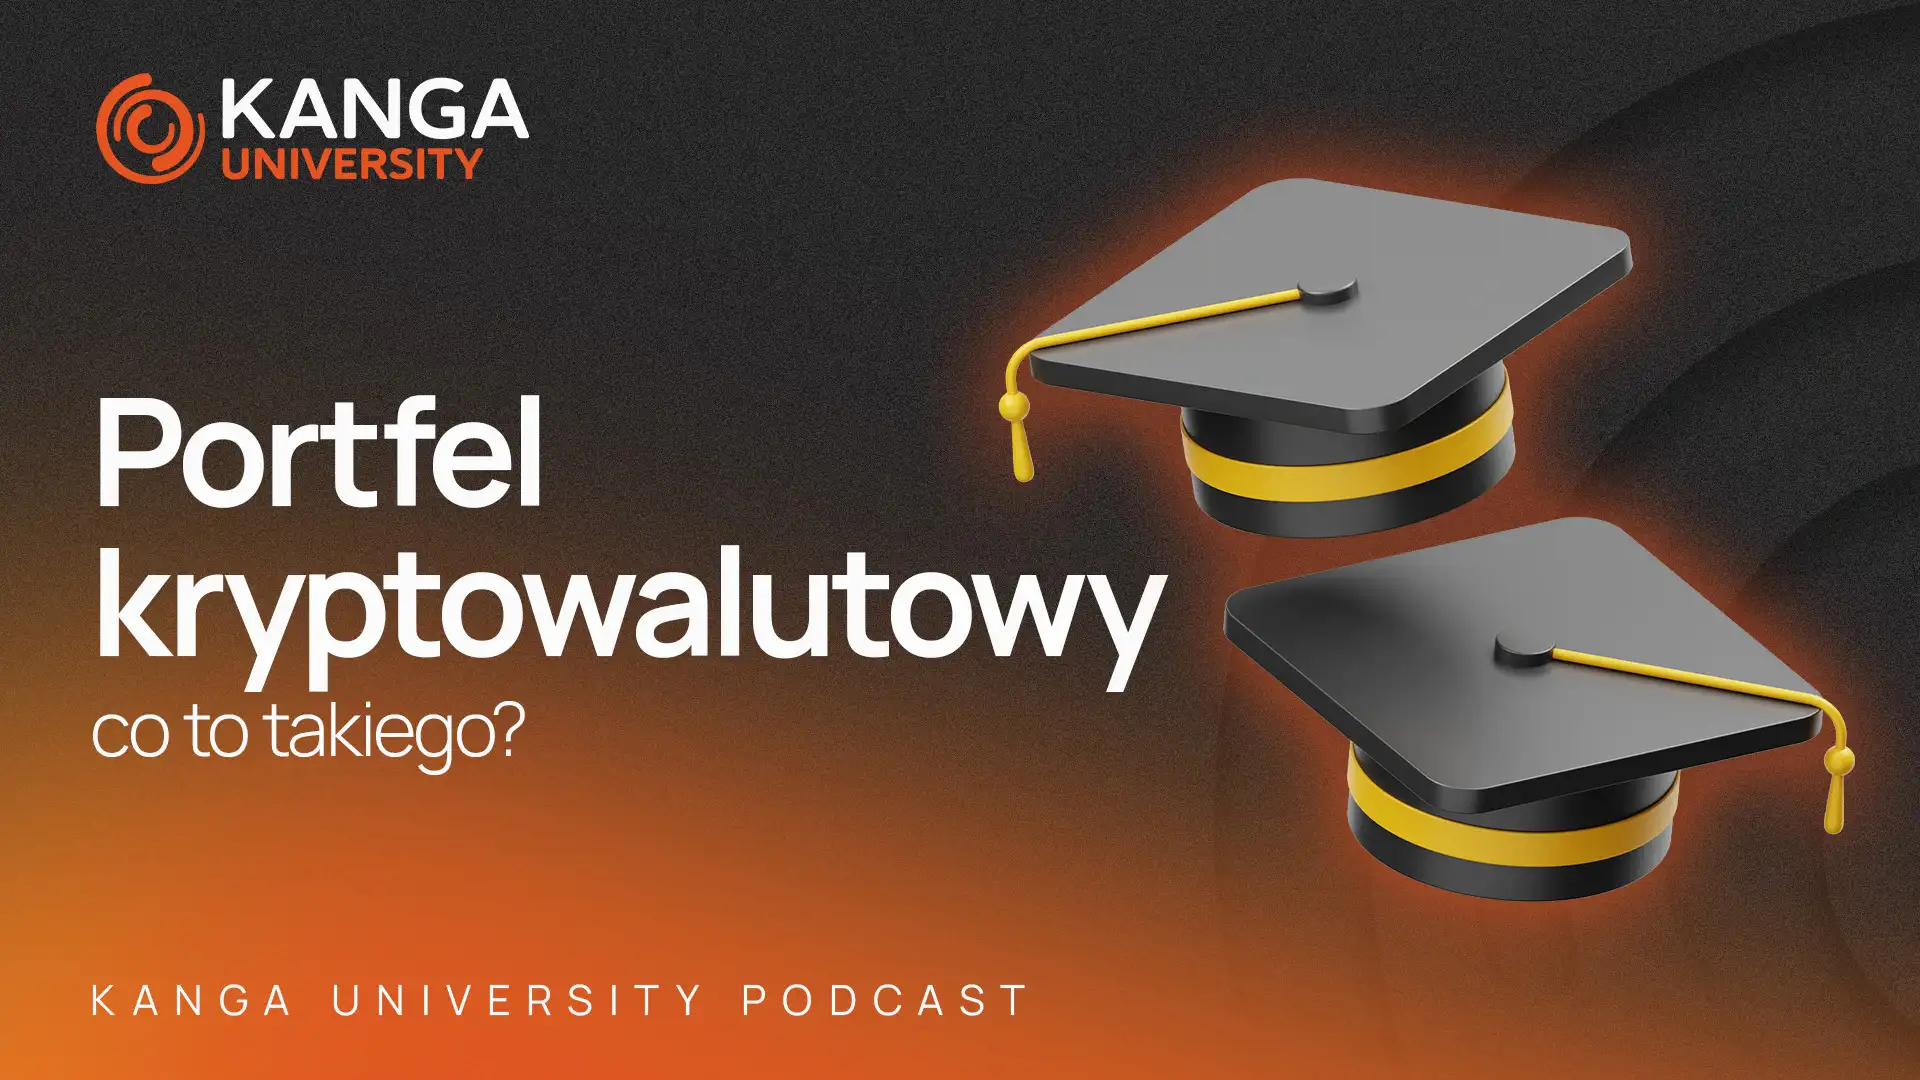 Kanga University Podcast #13 | Portfel kryptowalutowy, co to takiego?